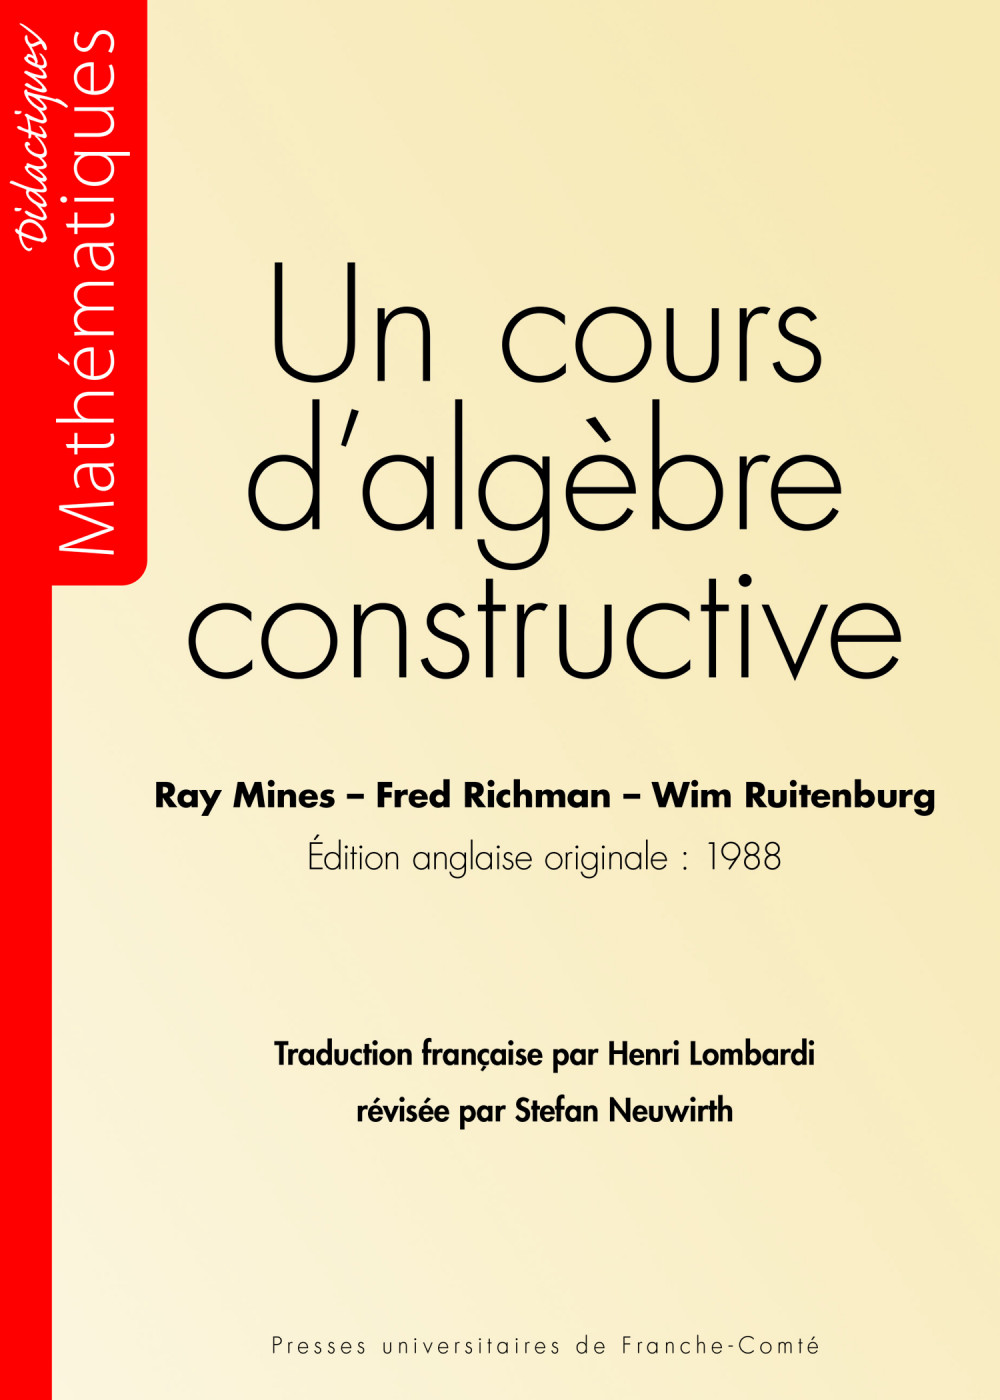 couverture de l'ouvrage Un cours d'algèbre constructive de Ray MINES, Fred RICHMAN,Wim RUITENBURG et traduit par Henri LOMBARDI avec la collaboration de Stefan NEUWIRTH